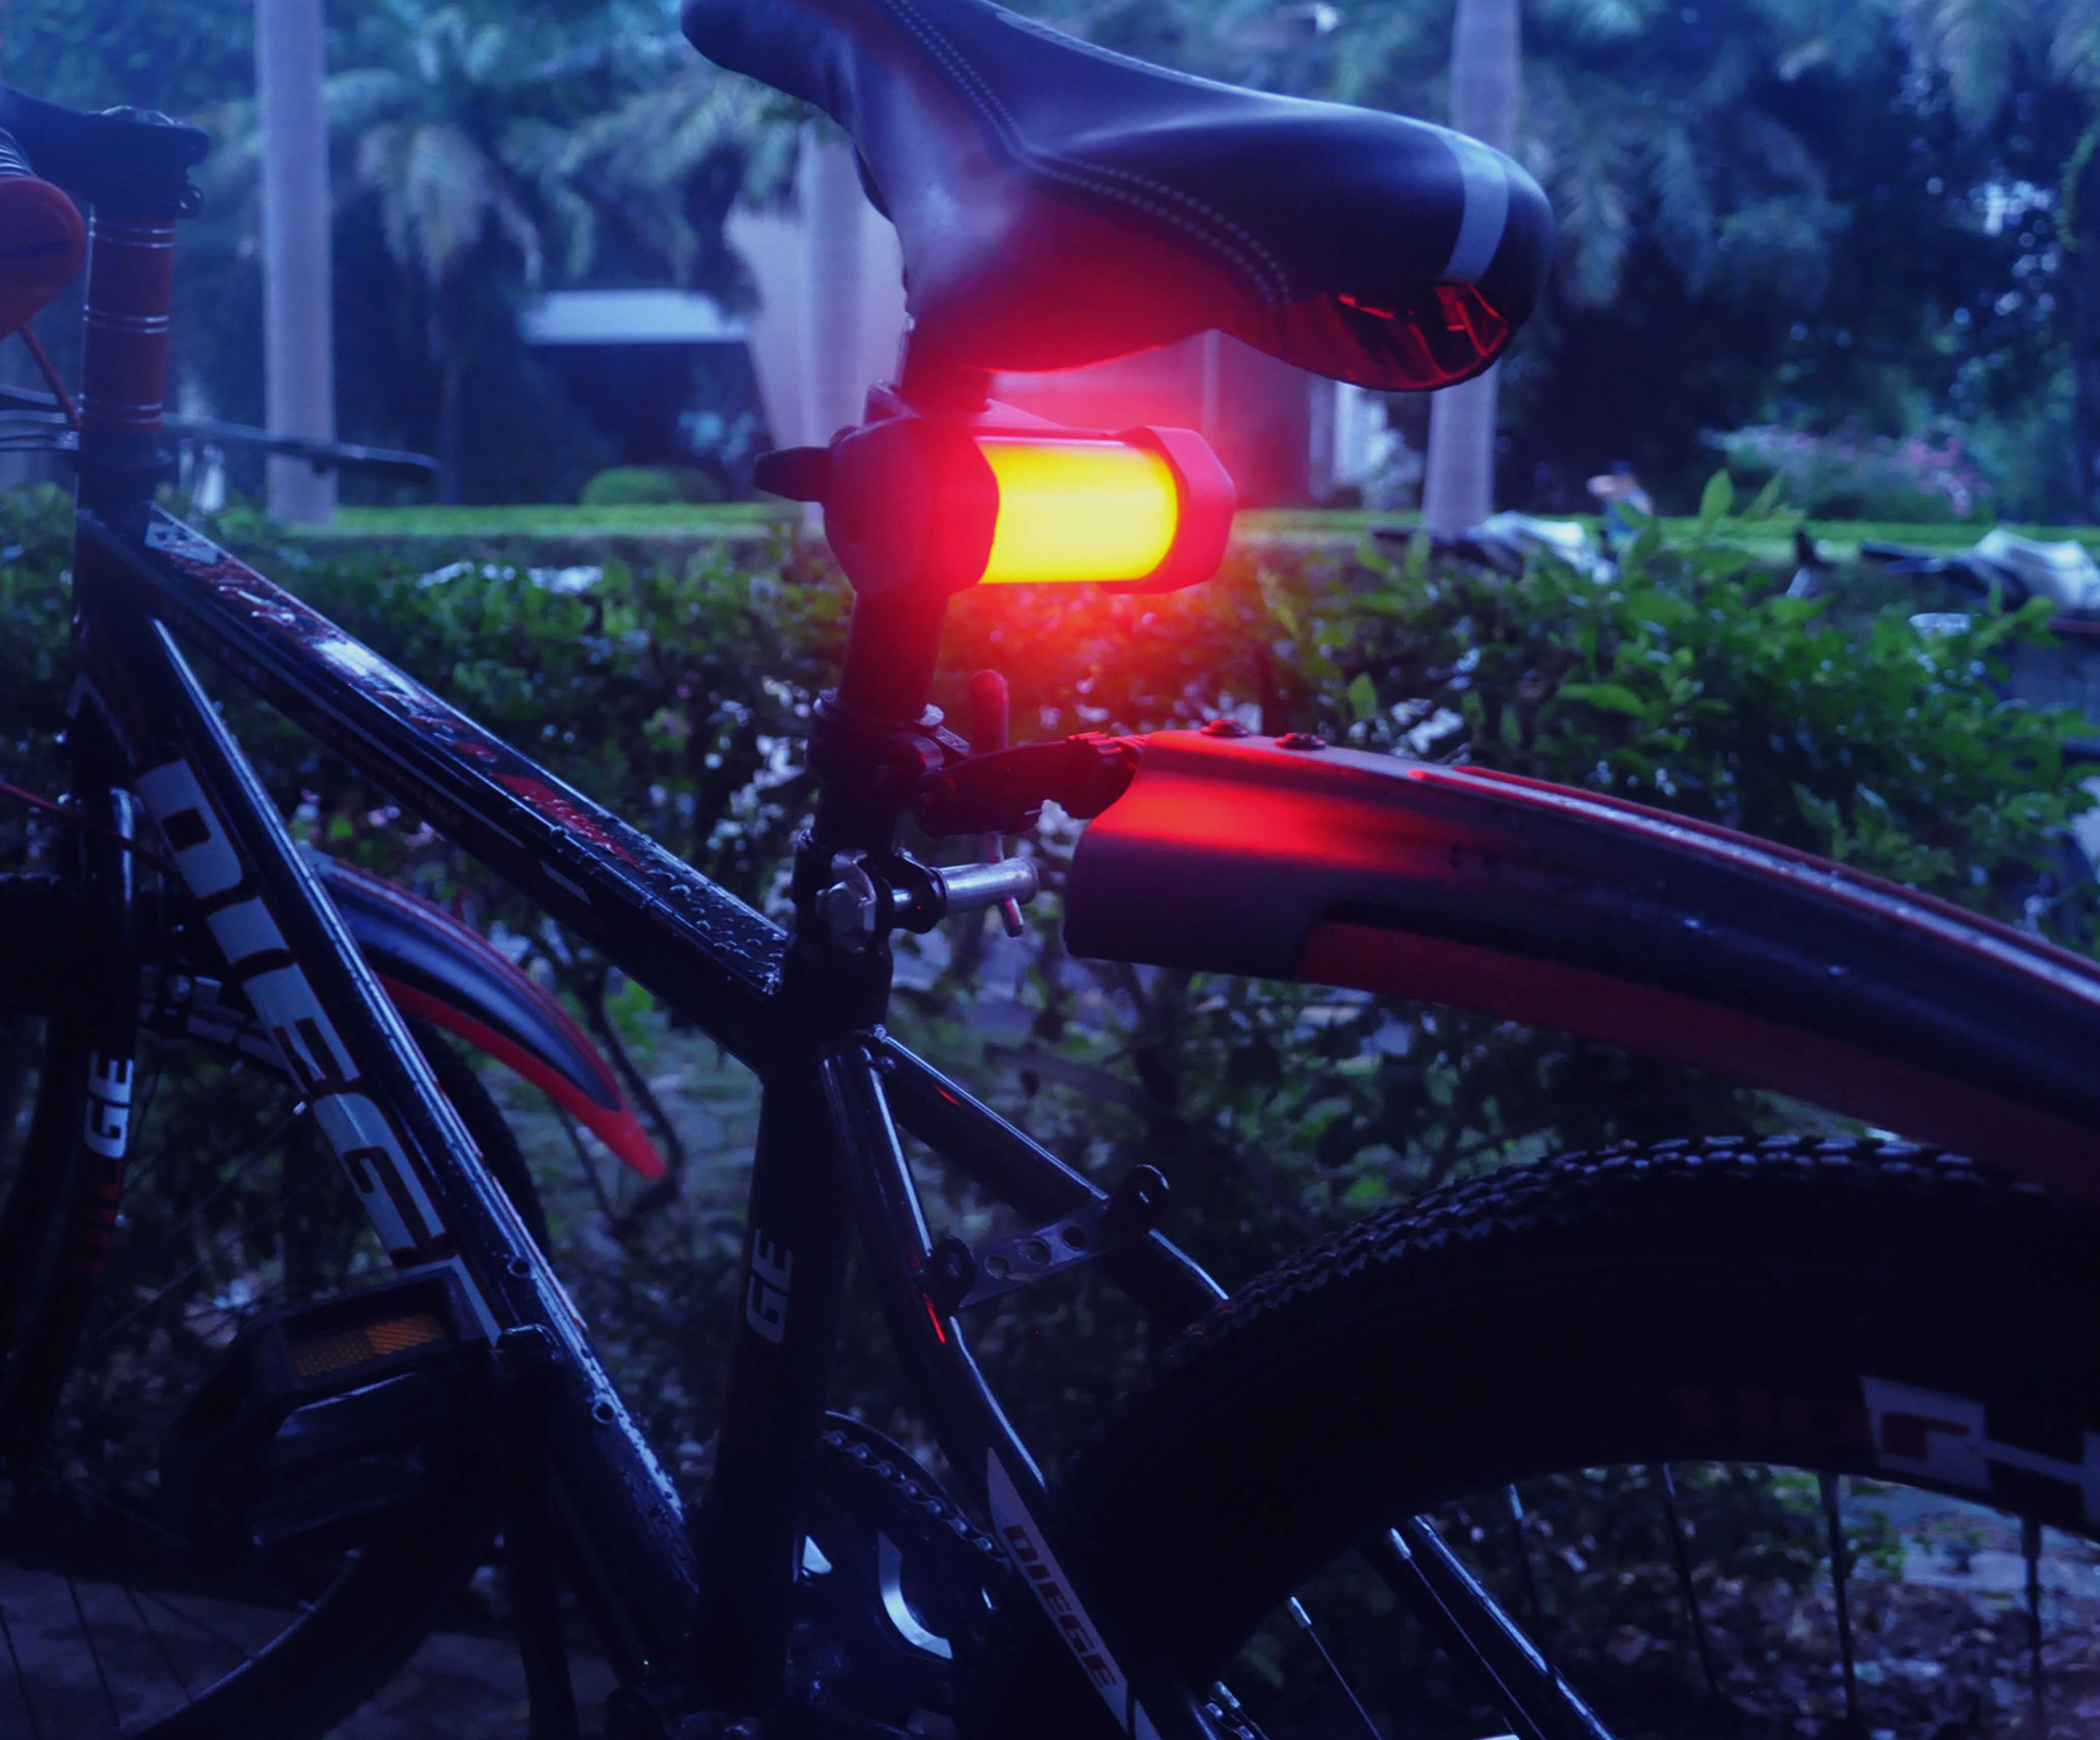 Bike Light